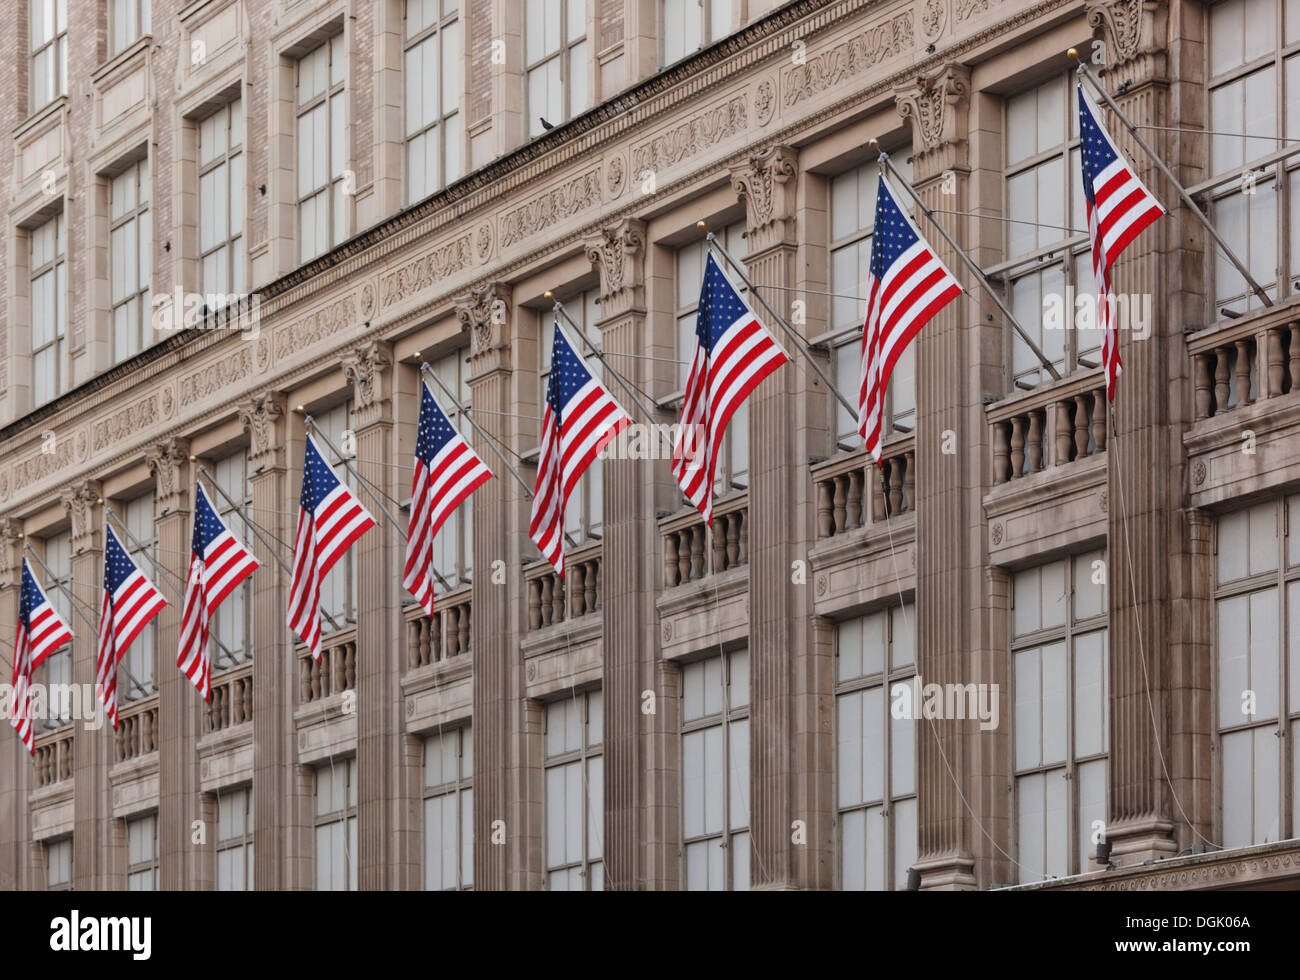 Des drapeaux américains sur le magasin Saks Fifth Avenue à New York, USA. Banque D'Images